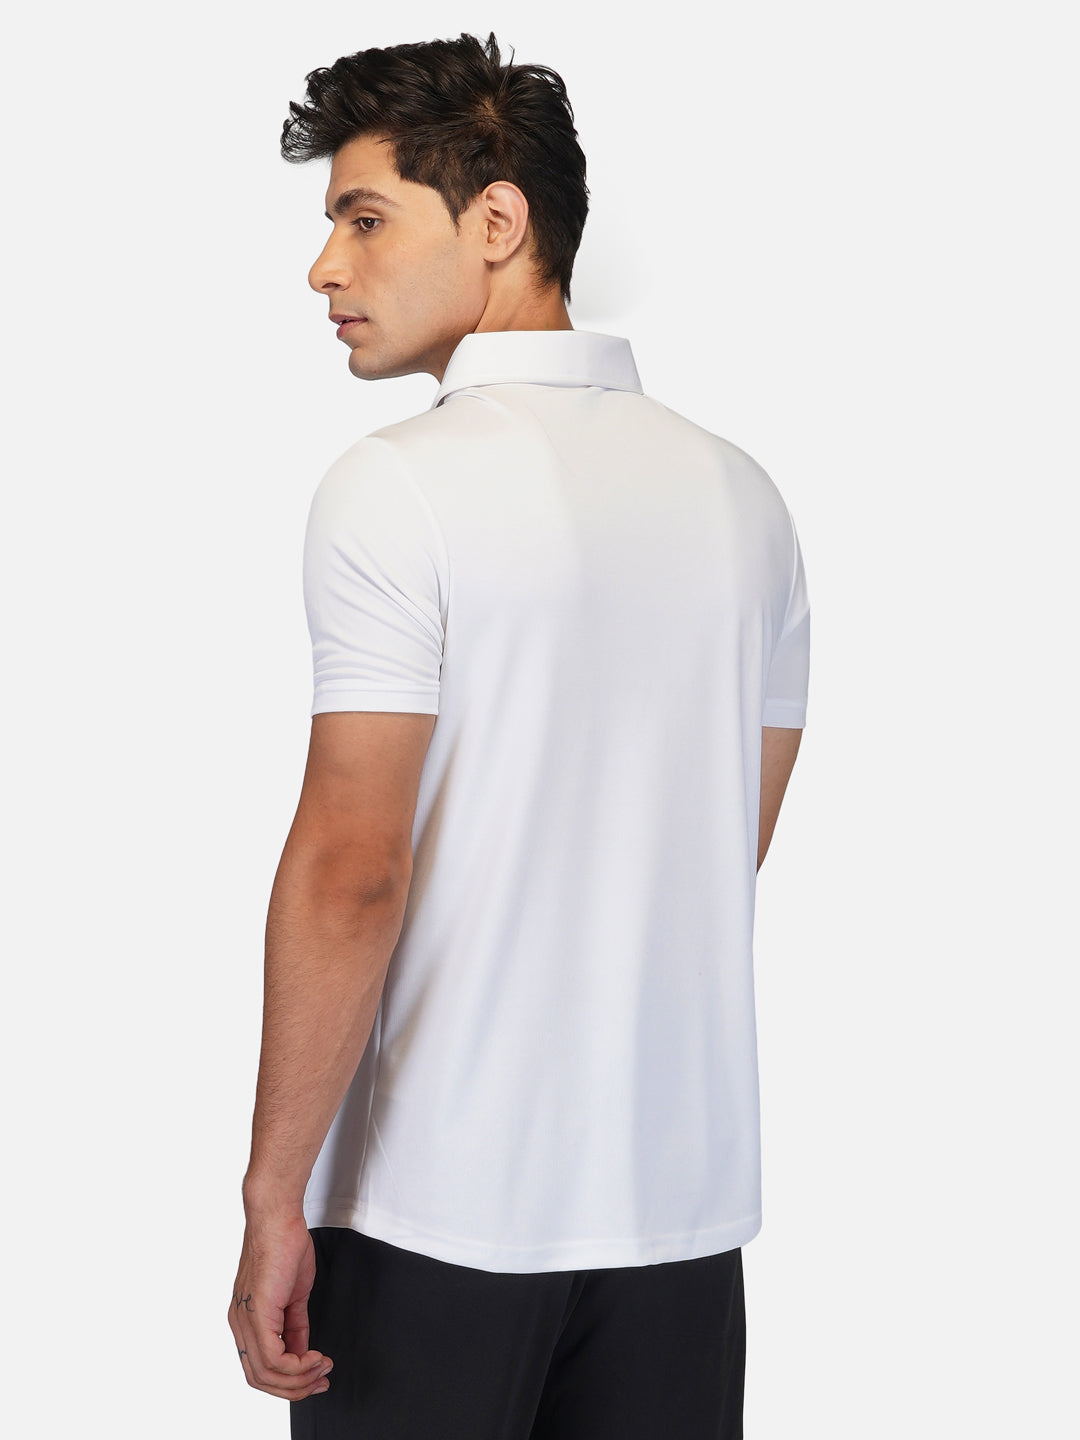 DriDOT Zipper Polo T Shirt White RWM2024